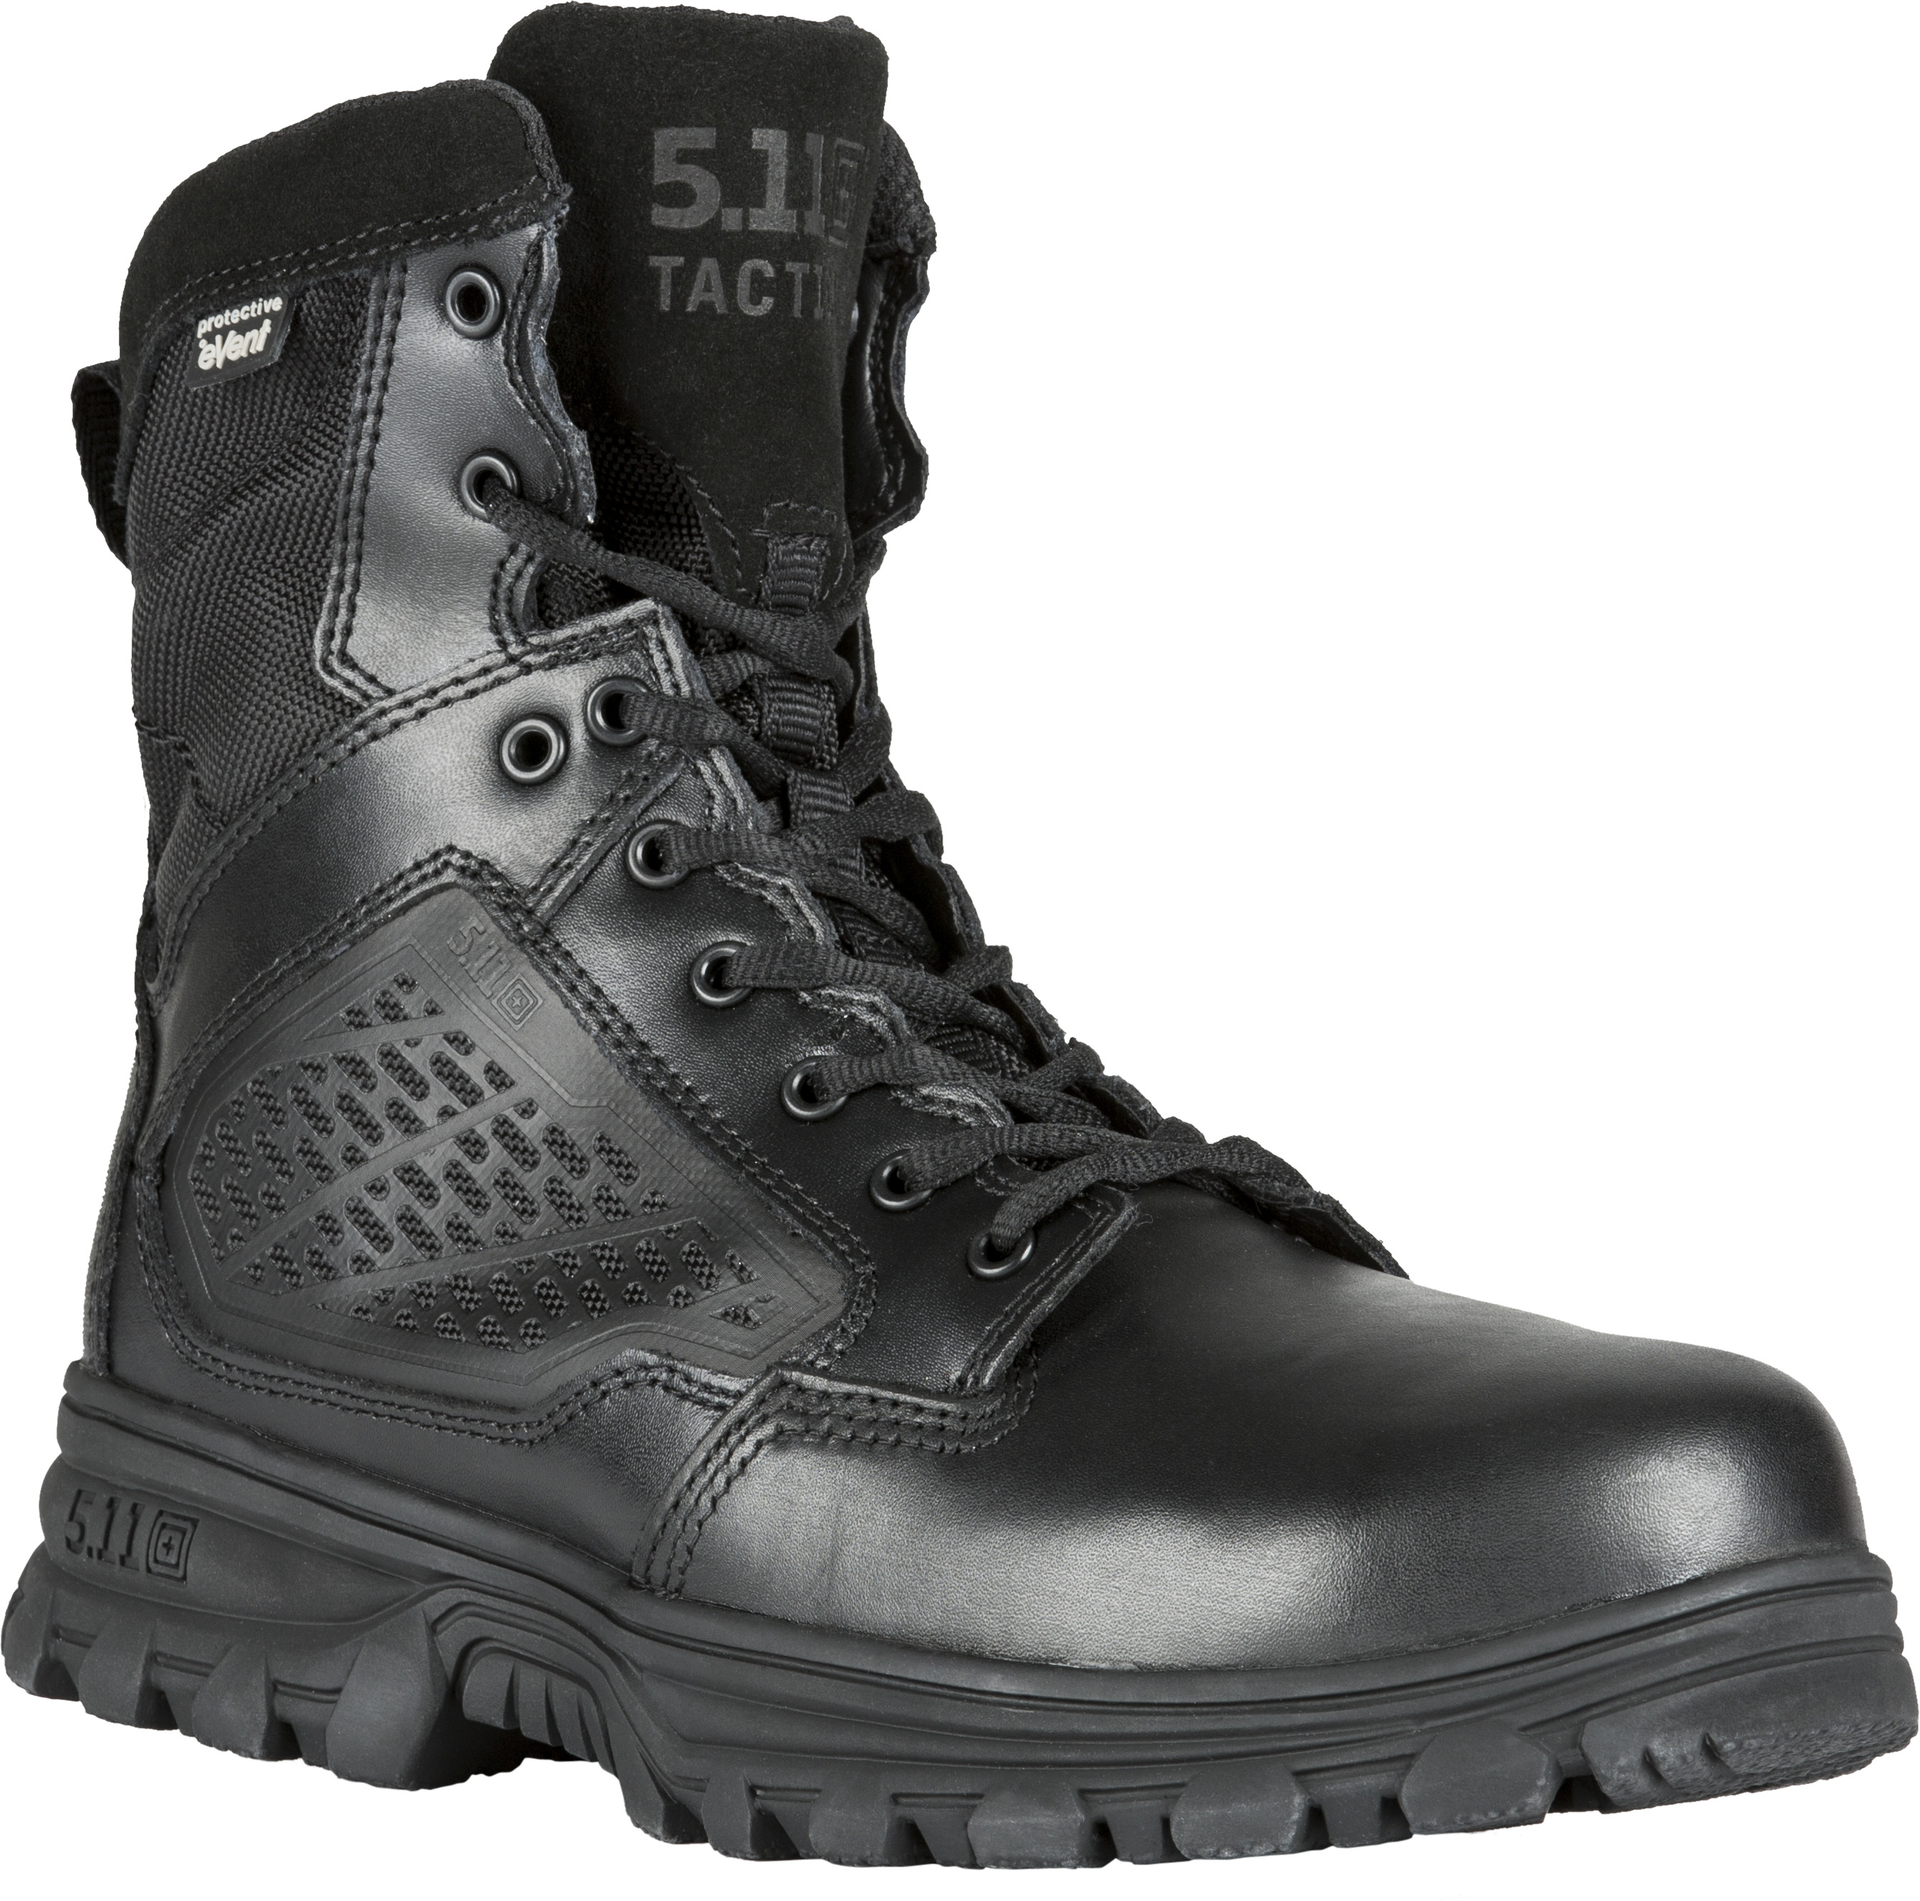 5.11 Tactical -- Evo Waterproof Boot 